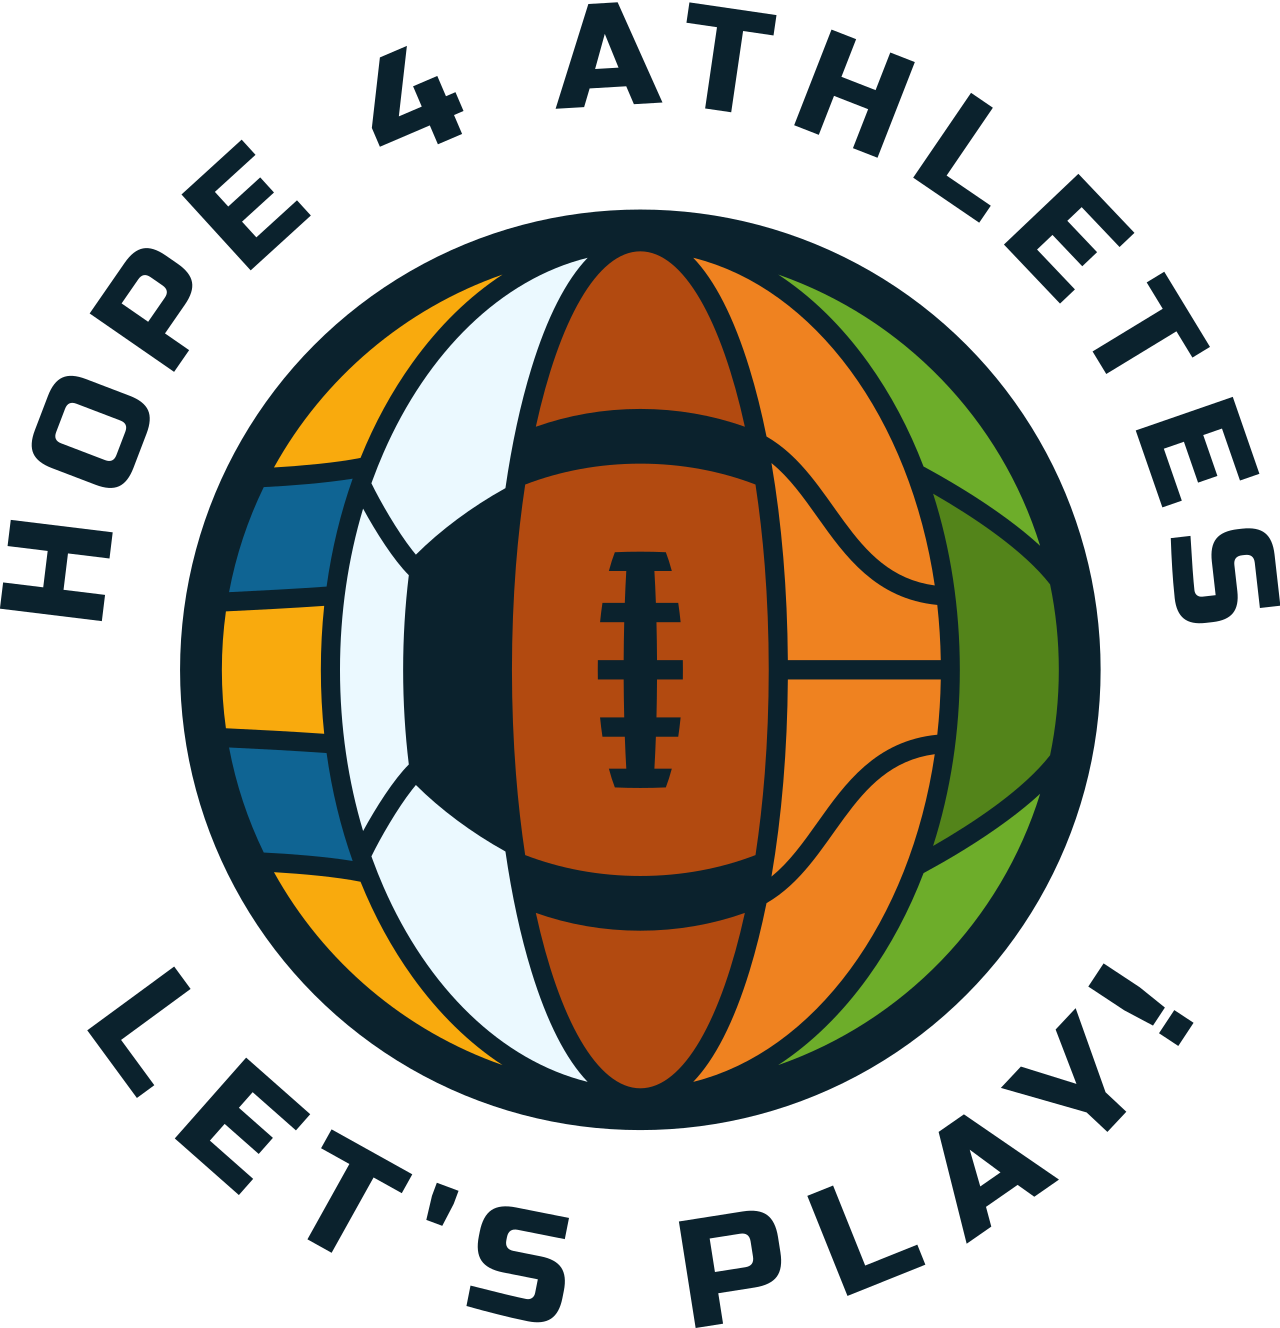 HOPE 4 ATHLETES's logo